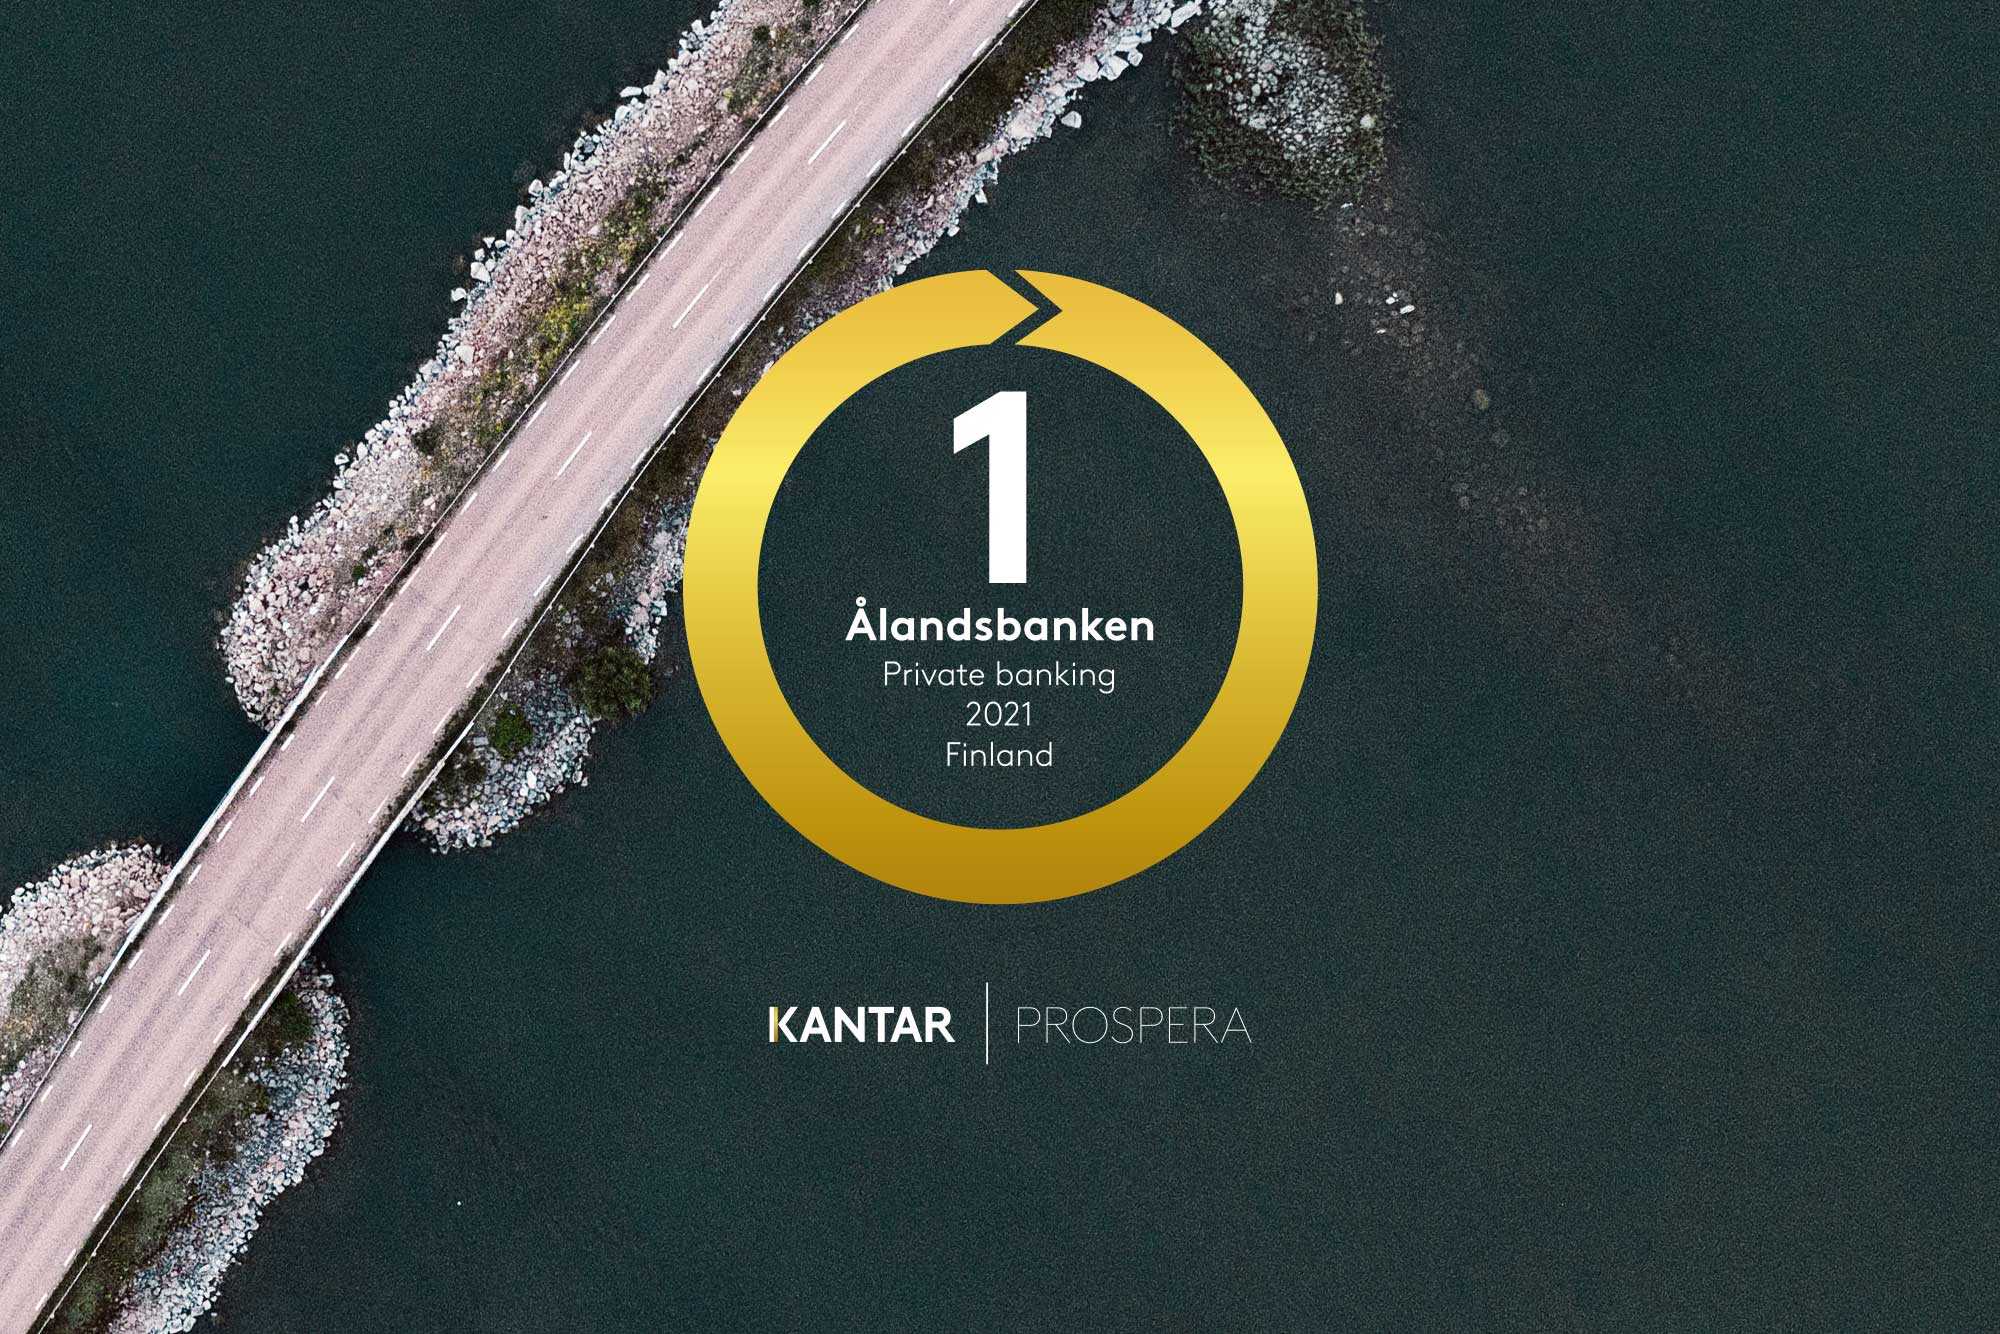 Ålandsbanken valittiin Suomen parhaaksi Private Banking -toimijaksi Kantar Sifo Prosperan 16. marraskuuta julkaistussa Private Banking 2021 Finland -tutkimuksessa. Teemme päivittäin töitä tarjotaksemme markkinoiden parasta palvelua. Meistä on hienoa, että olemme asiakkaidemme mielestä siinä onnistuneet.